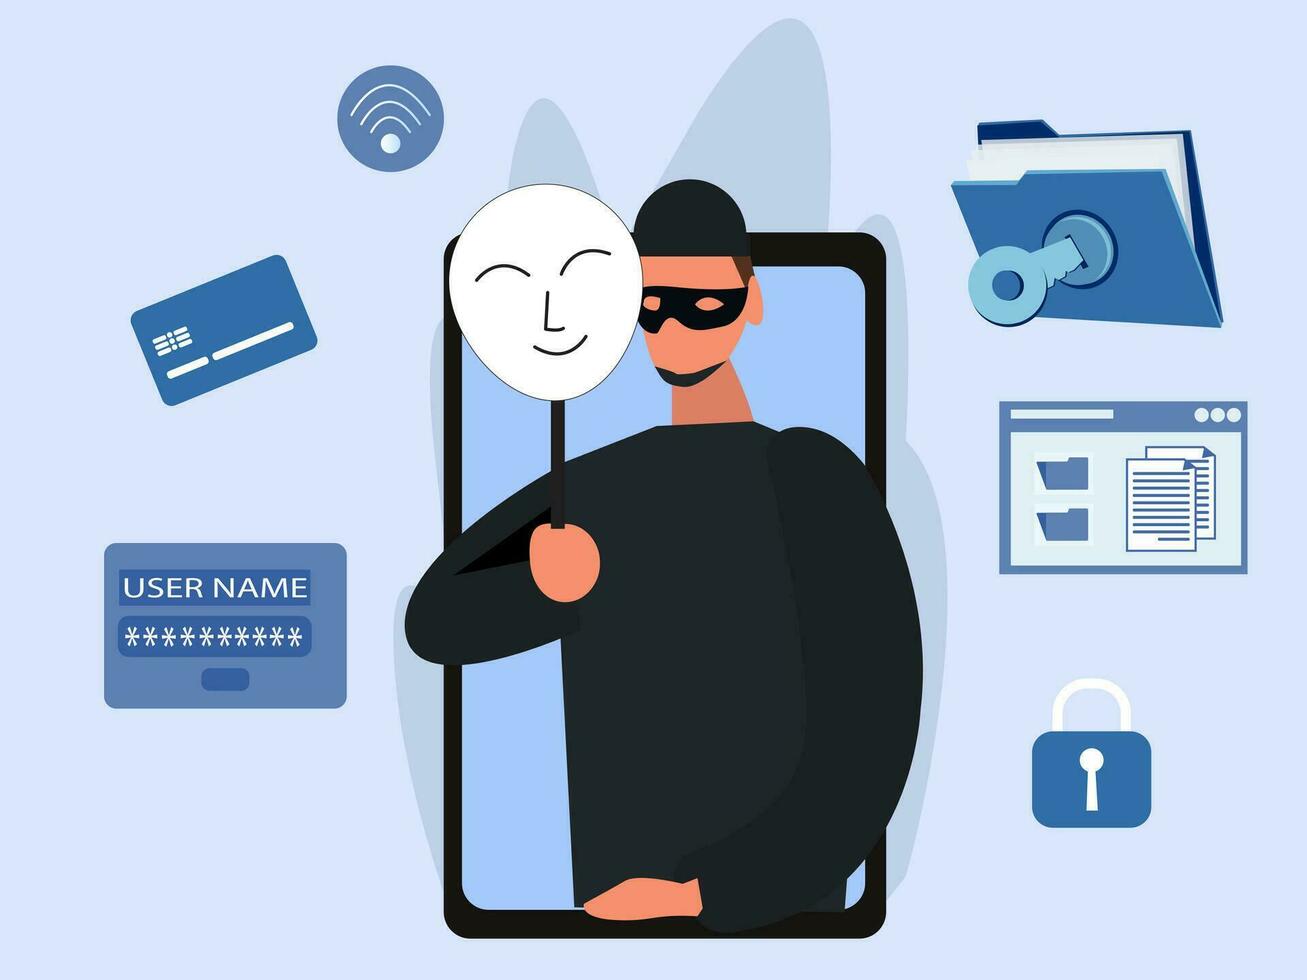 hacker criminal con máscara de amigos por hackear en la pantalla del teléfono móvil robando dinero, crimen cibernético, robo de datos personales, contraseña, ilustración de vector plano de tarjeta de crédito.